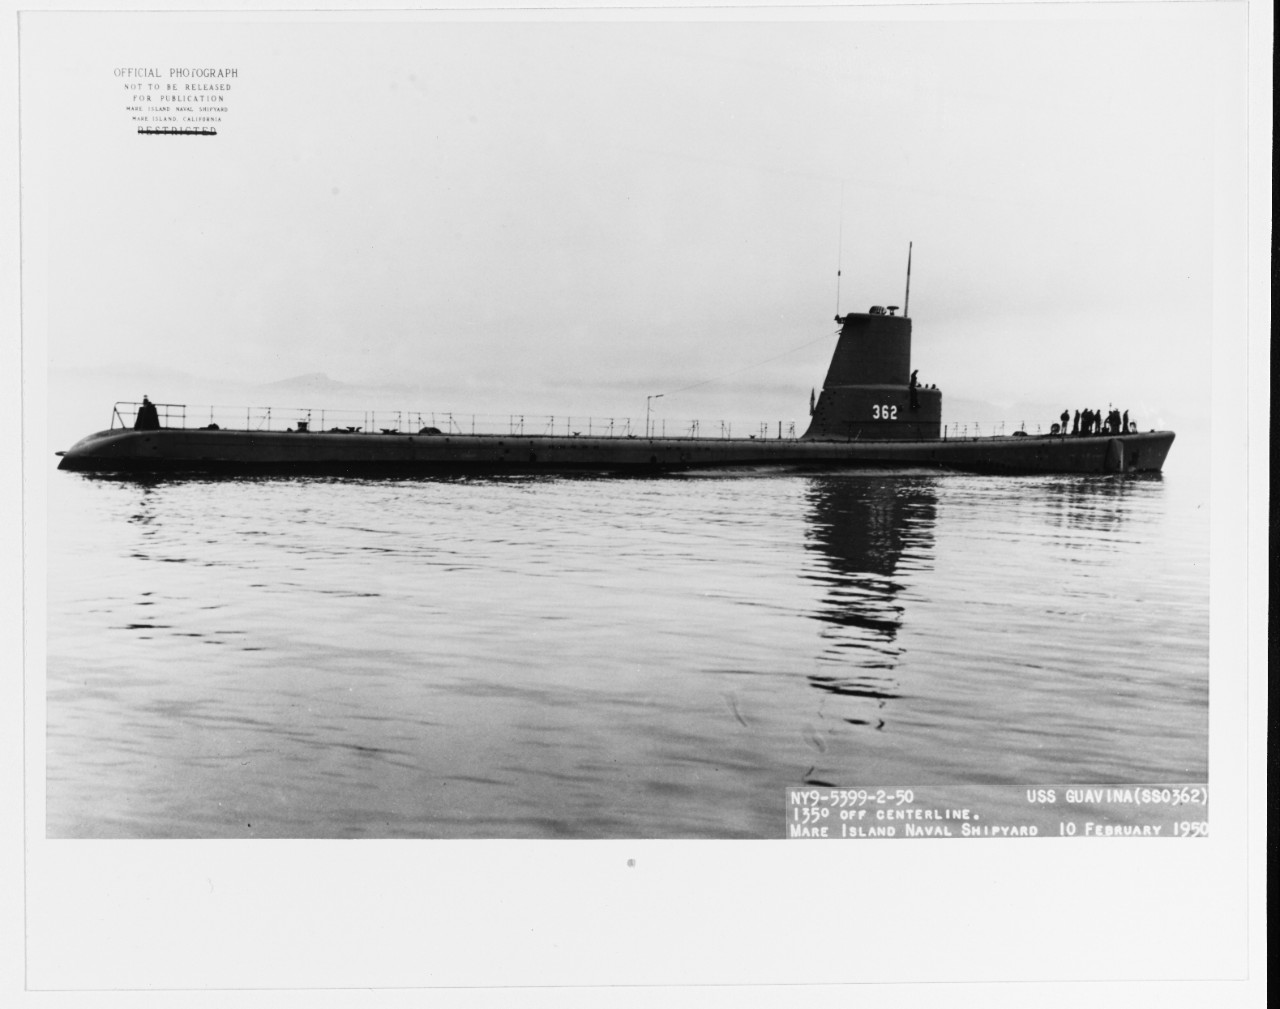 USS GUAVINA (SSO-362)